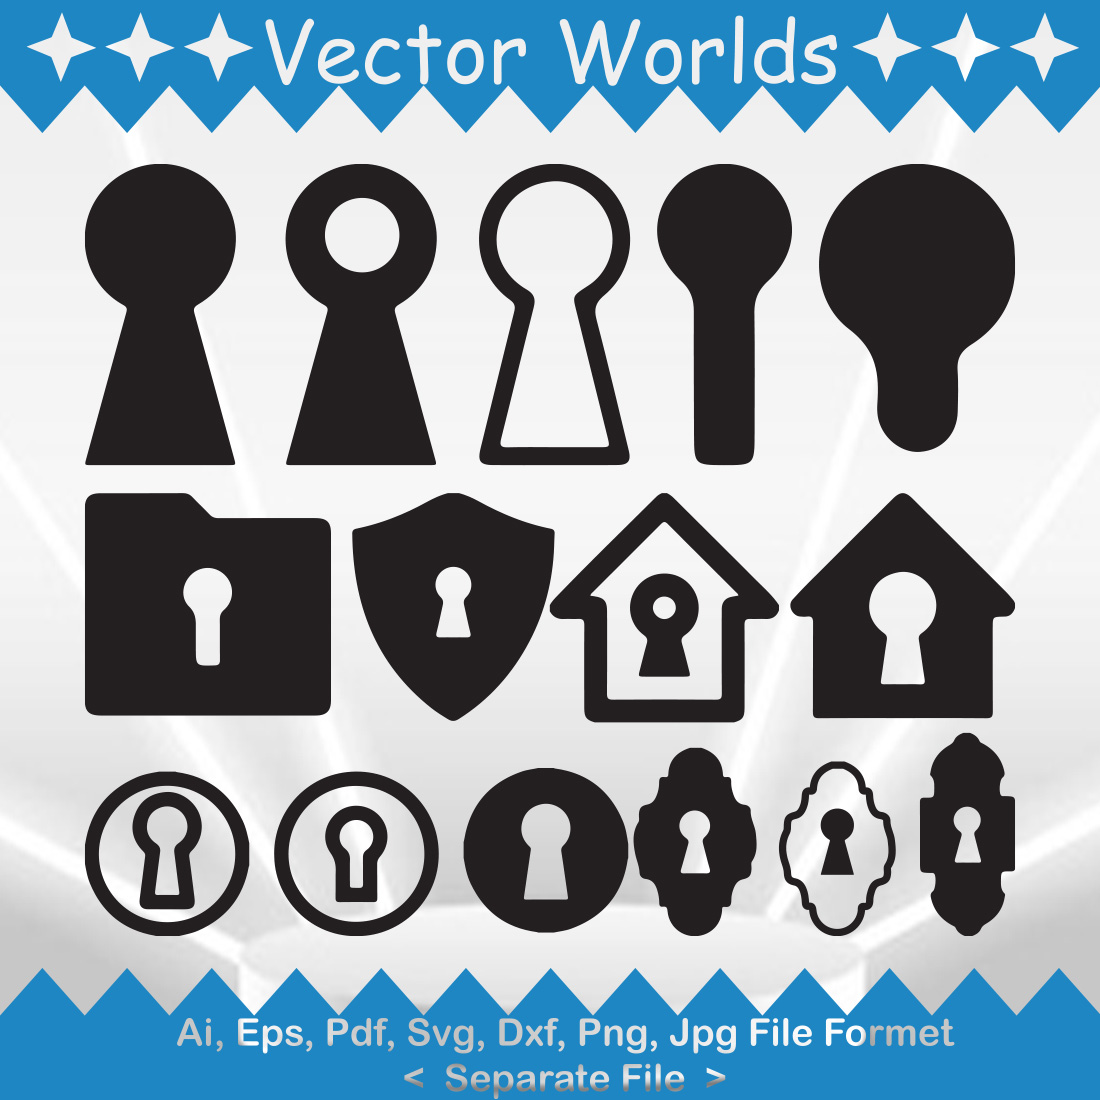 Keyhole Symbol SVG Vector Design cover image.